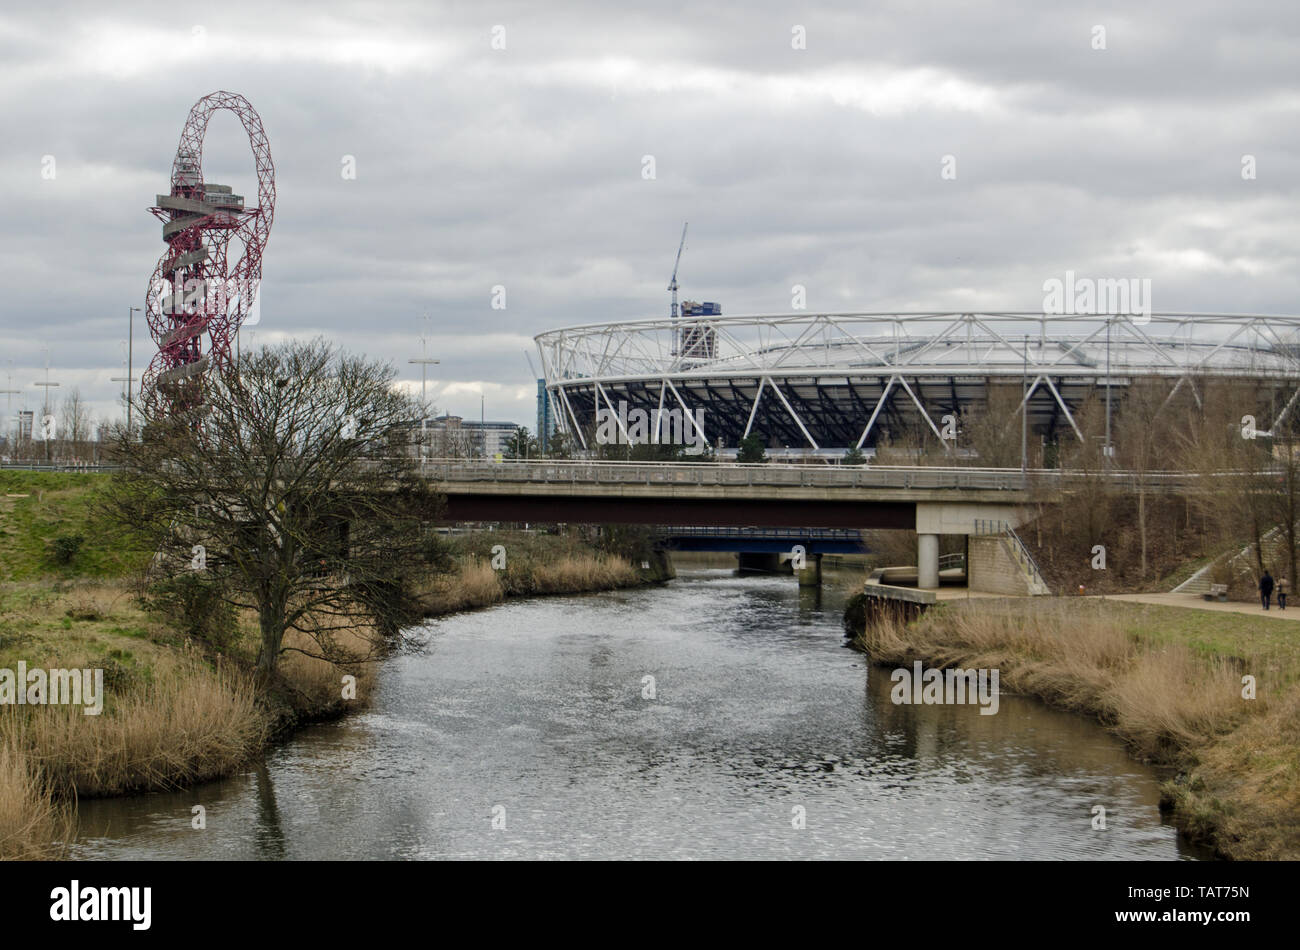 Londres, Royaume-Uni - 19 mars 2016 : voir le long de la rivière Lea vers le stade de Londres et de l'orbite dans la structure de la Reine Elizabeth, parc olympique de Stratford. Banque D'Images